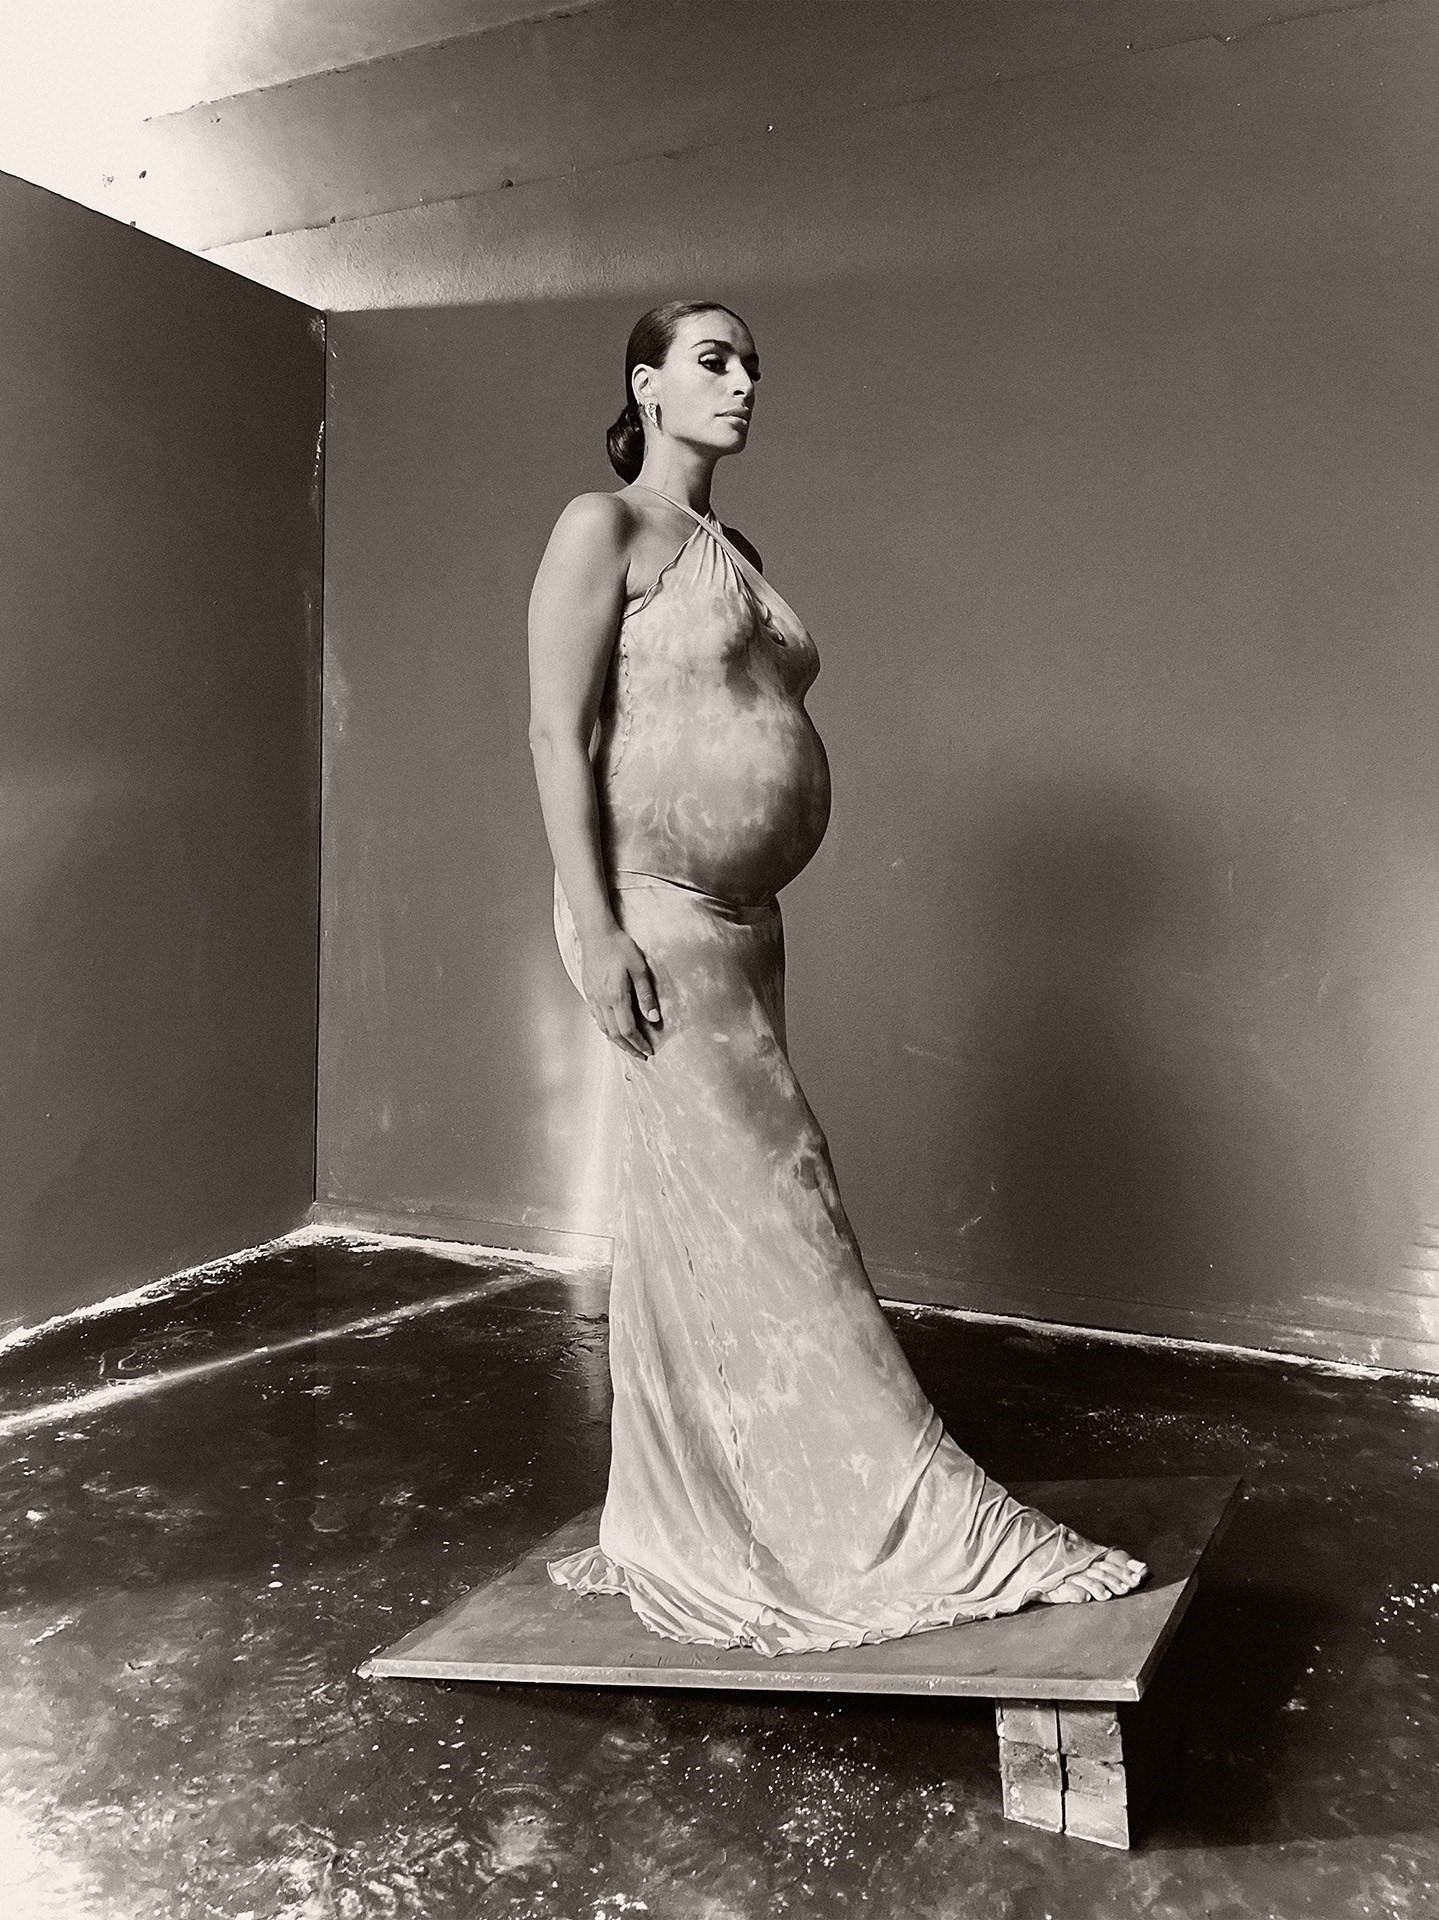 Sevdaliza pregnant Paul Kooiker photographer artist